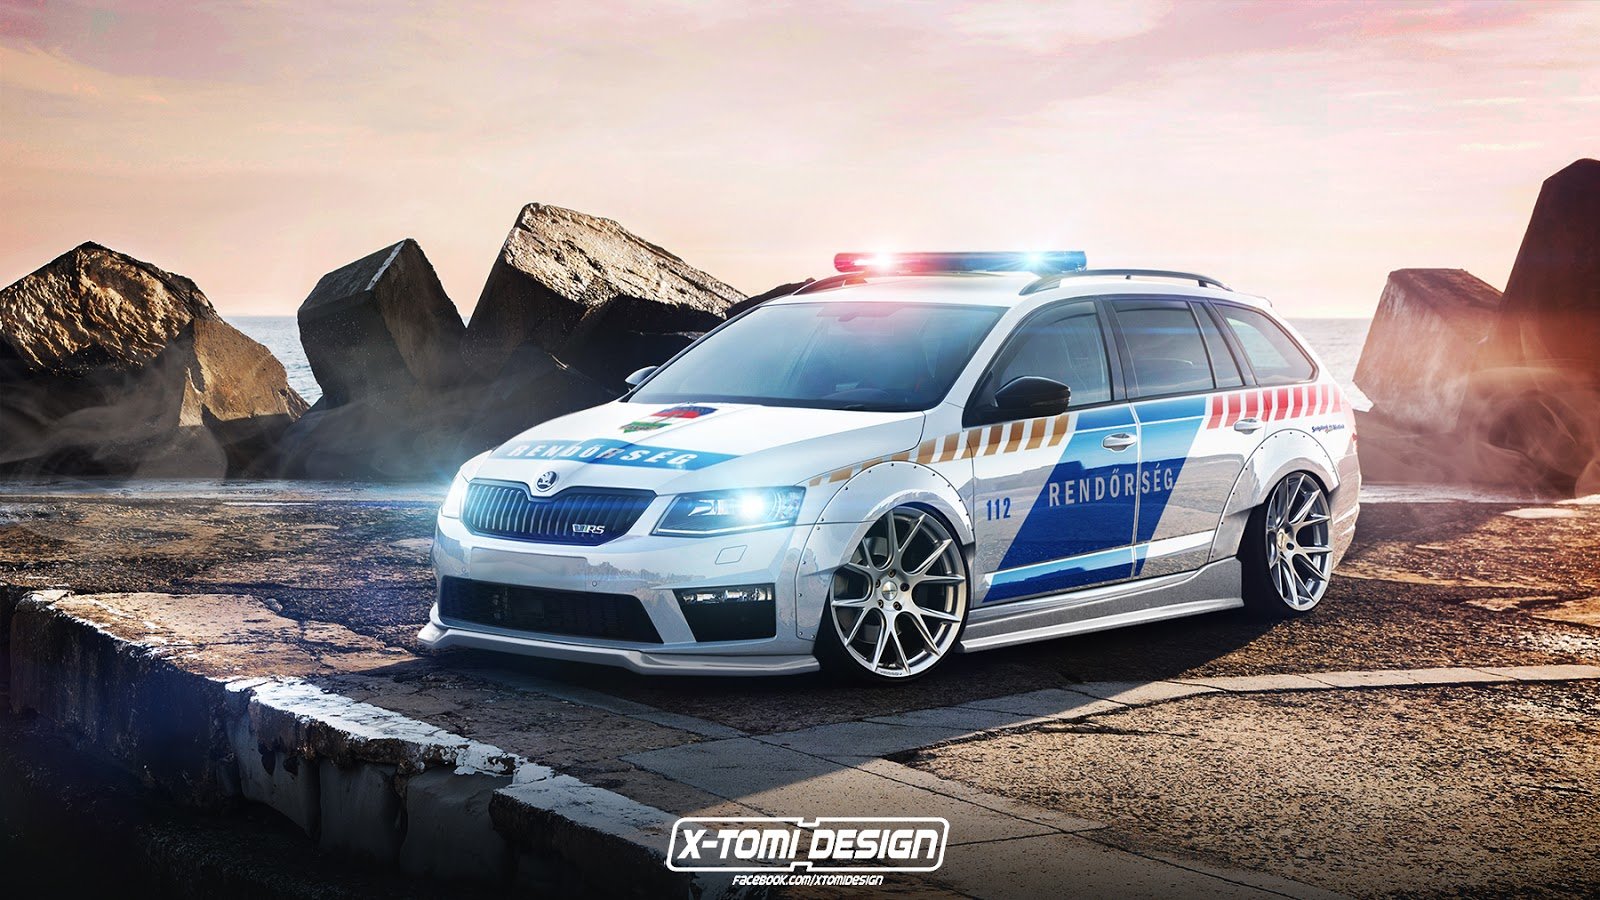 Divoce upravená Octavia RS v policejních barvách je vizí známého grafika.